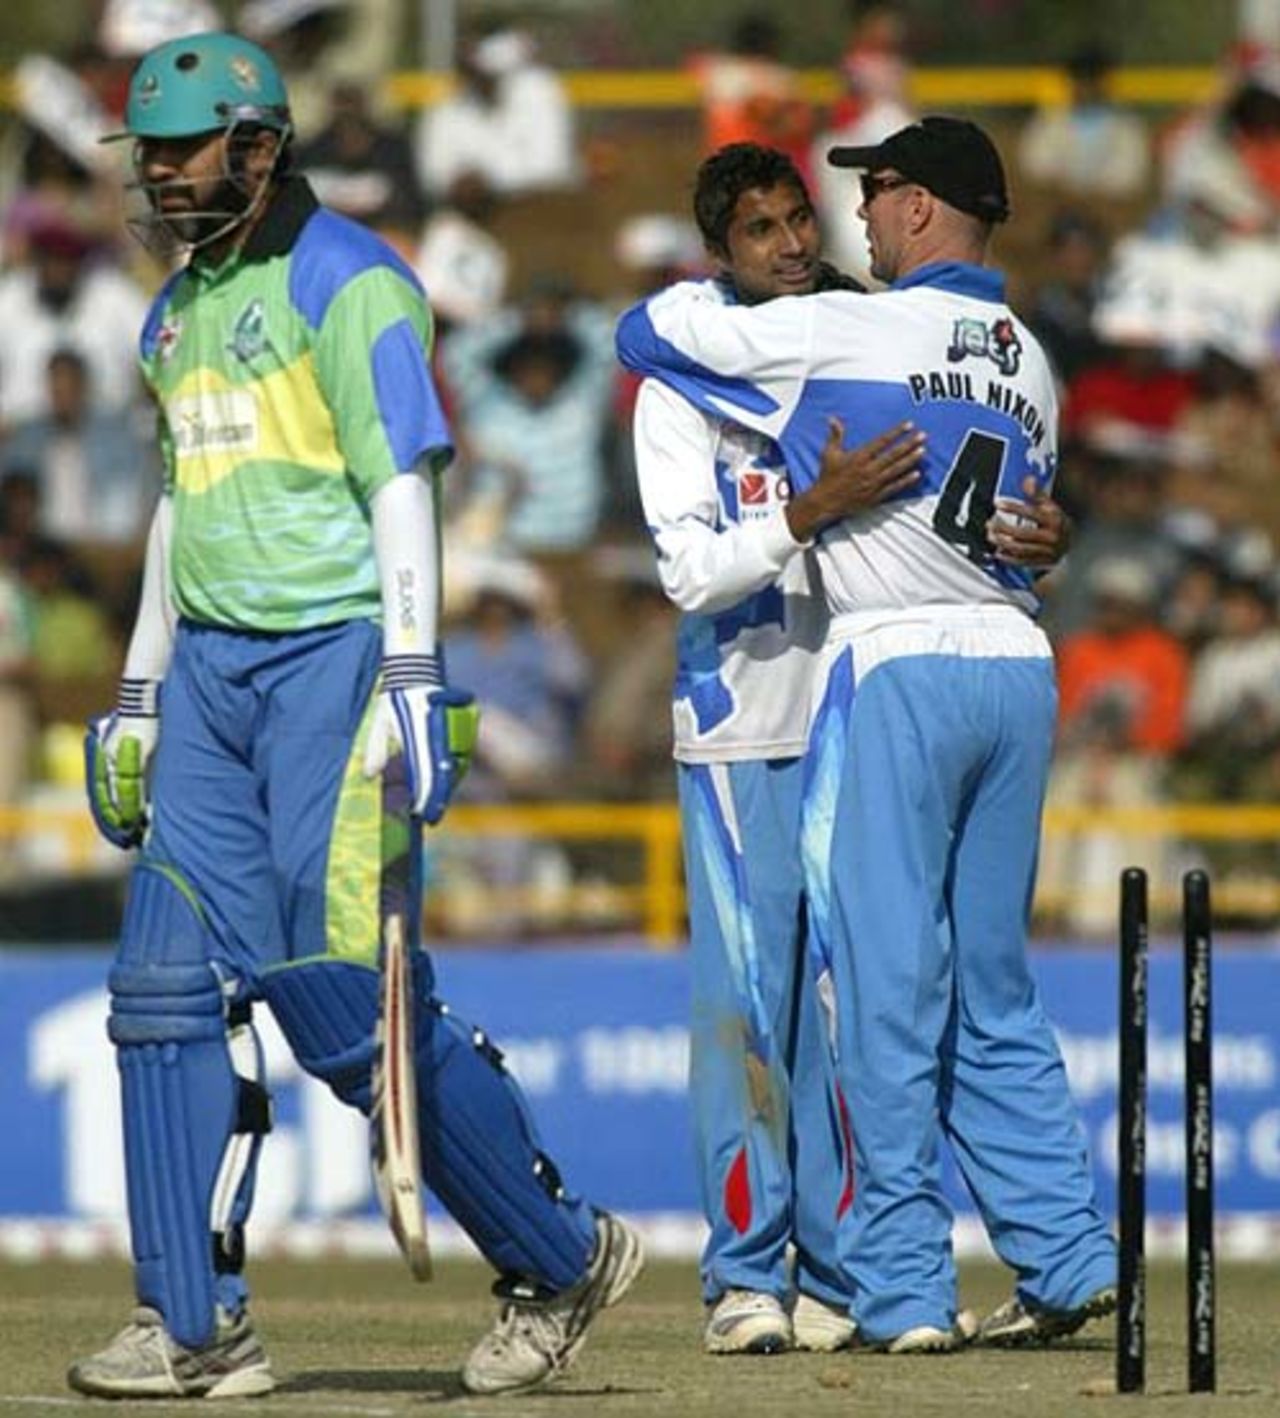 Inzamam-ul-Haq fell to Ali Murtaza, Delhi Jets v Hyderabad Heroes, Indian Cricket League, December 2, 2007